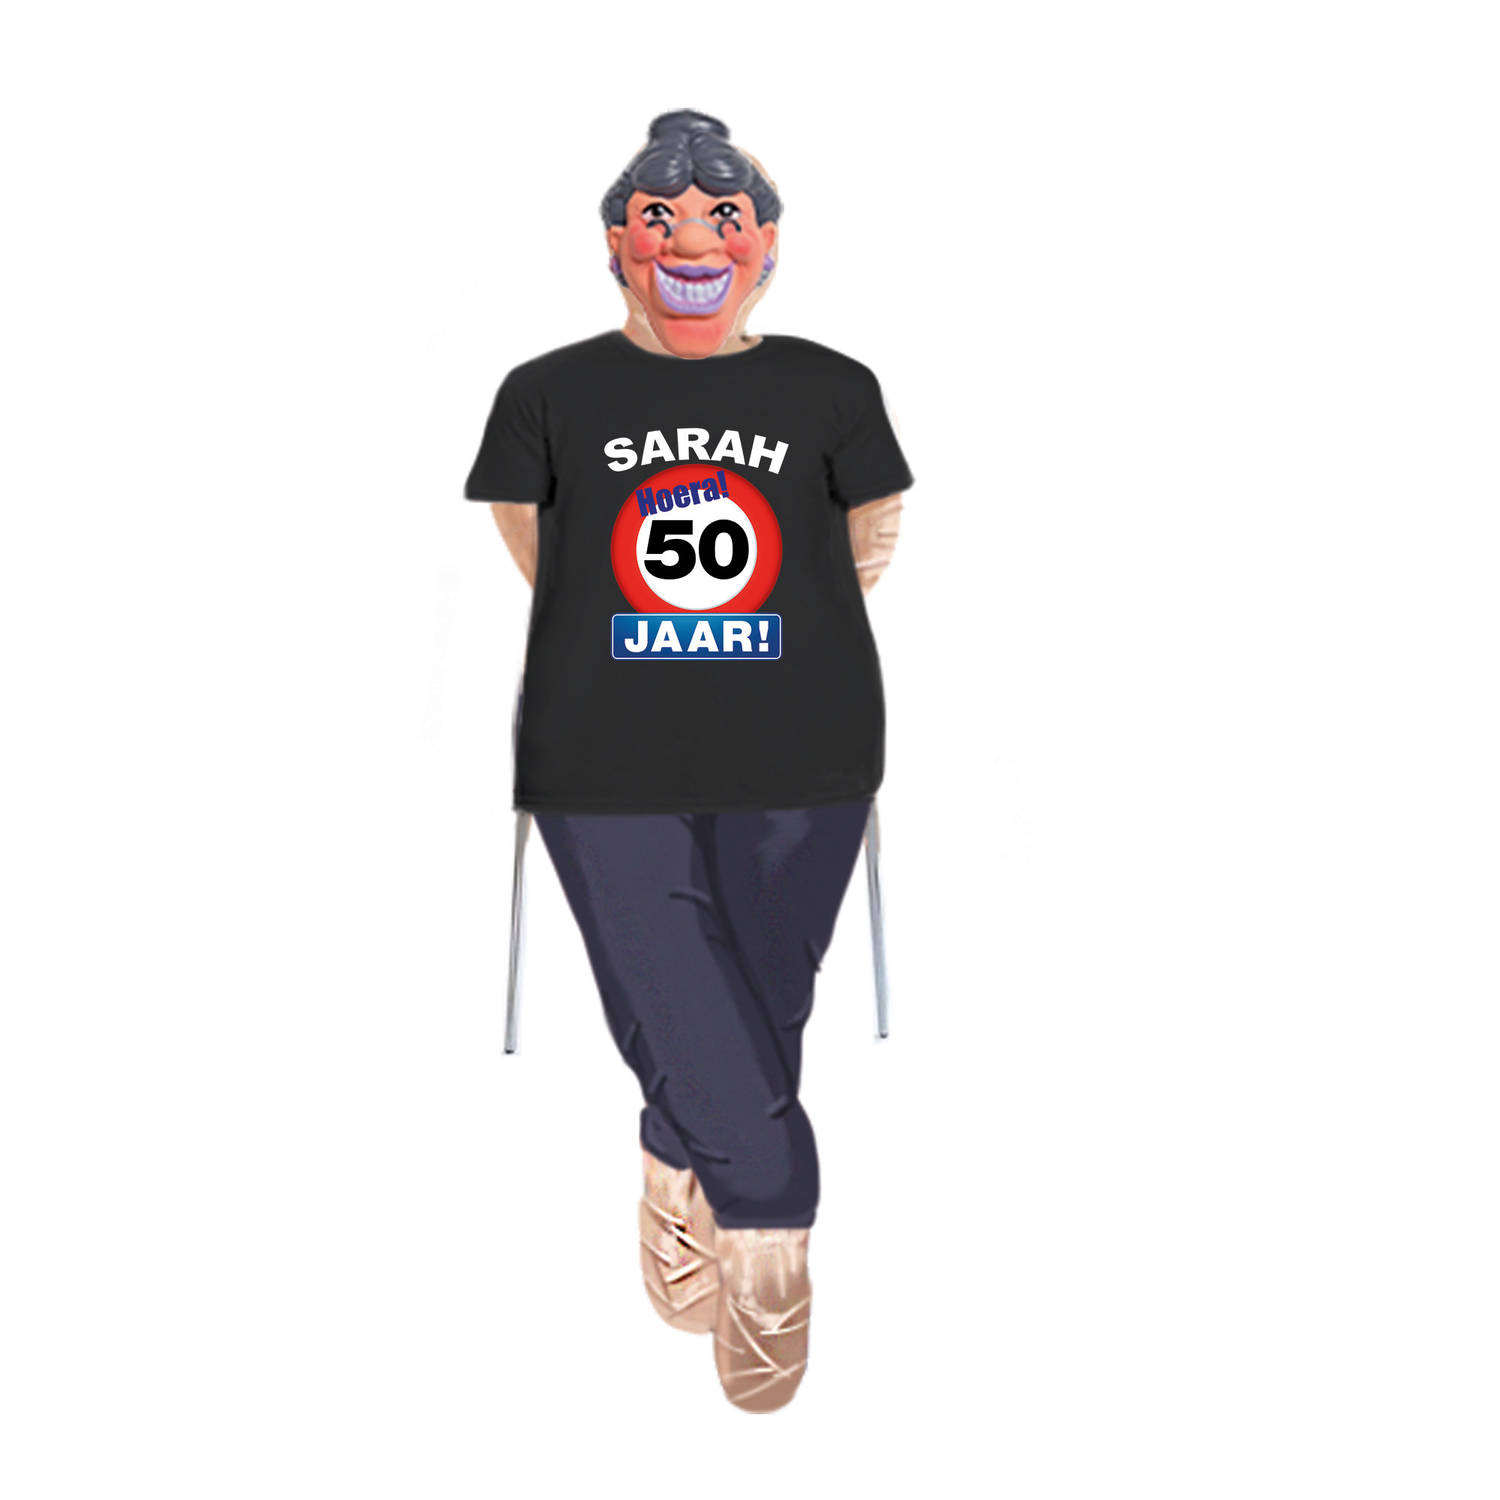 Sarah pop compleet met stopbord 50 jaar t-shirt en masker - Feestdecoratievoorwerp